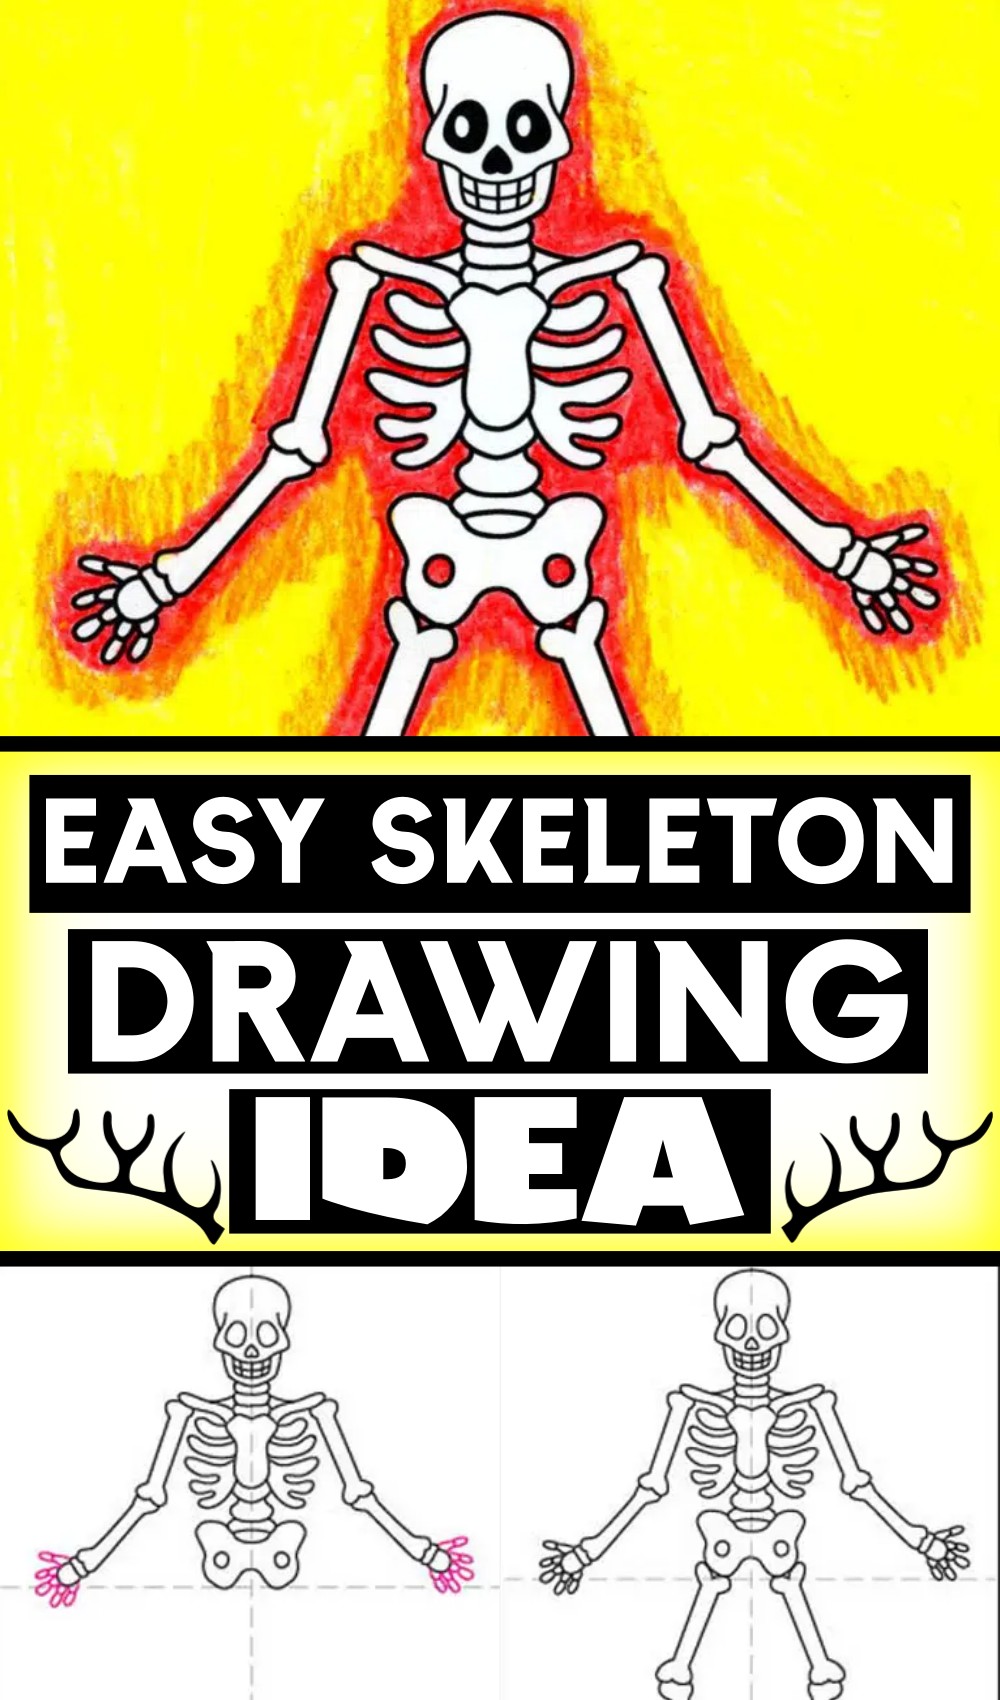 Easy Skeleton Drawing Tutorial